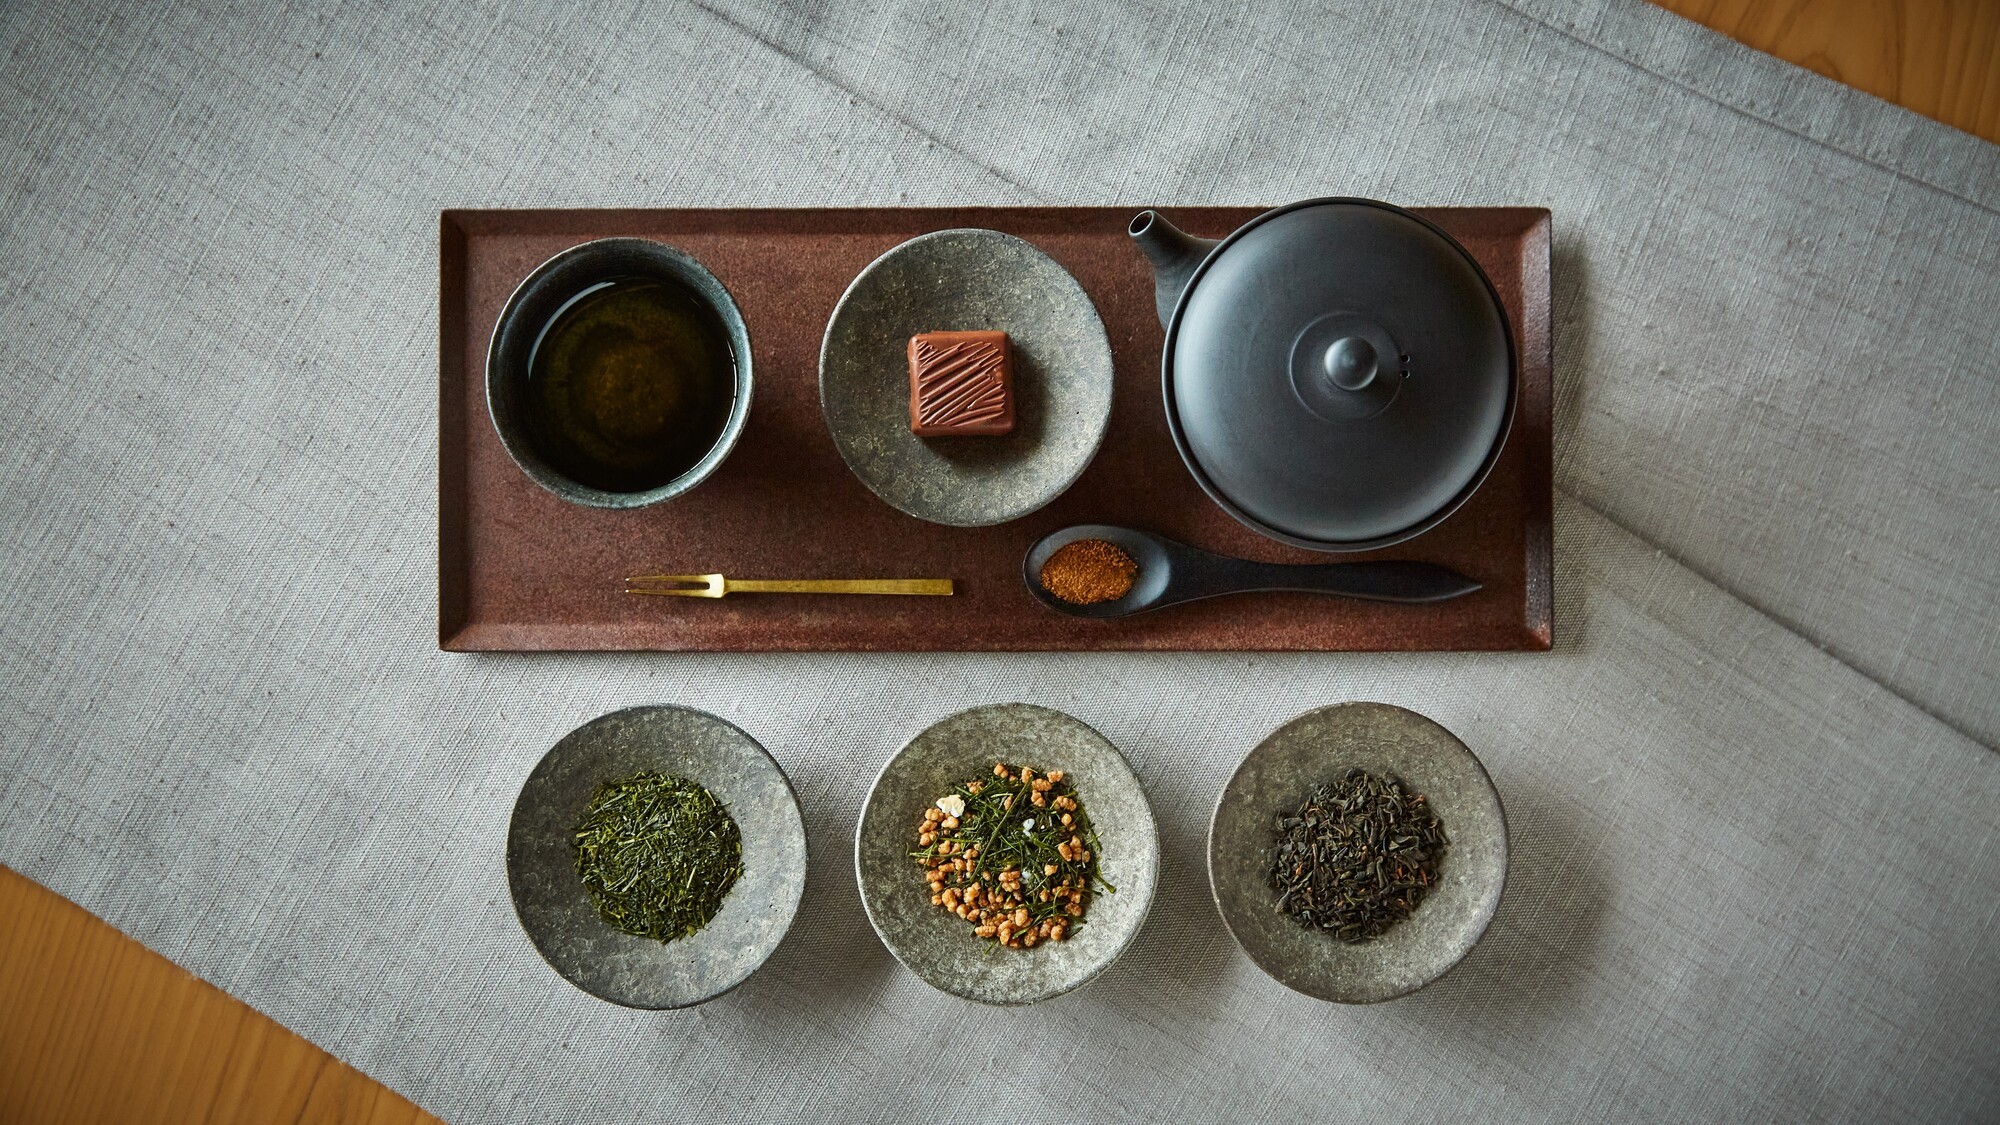 【茶寮】ご自身の体調やその日の気分に合わせて効能を選べる和漢茶。